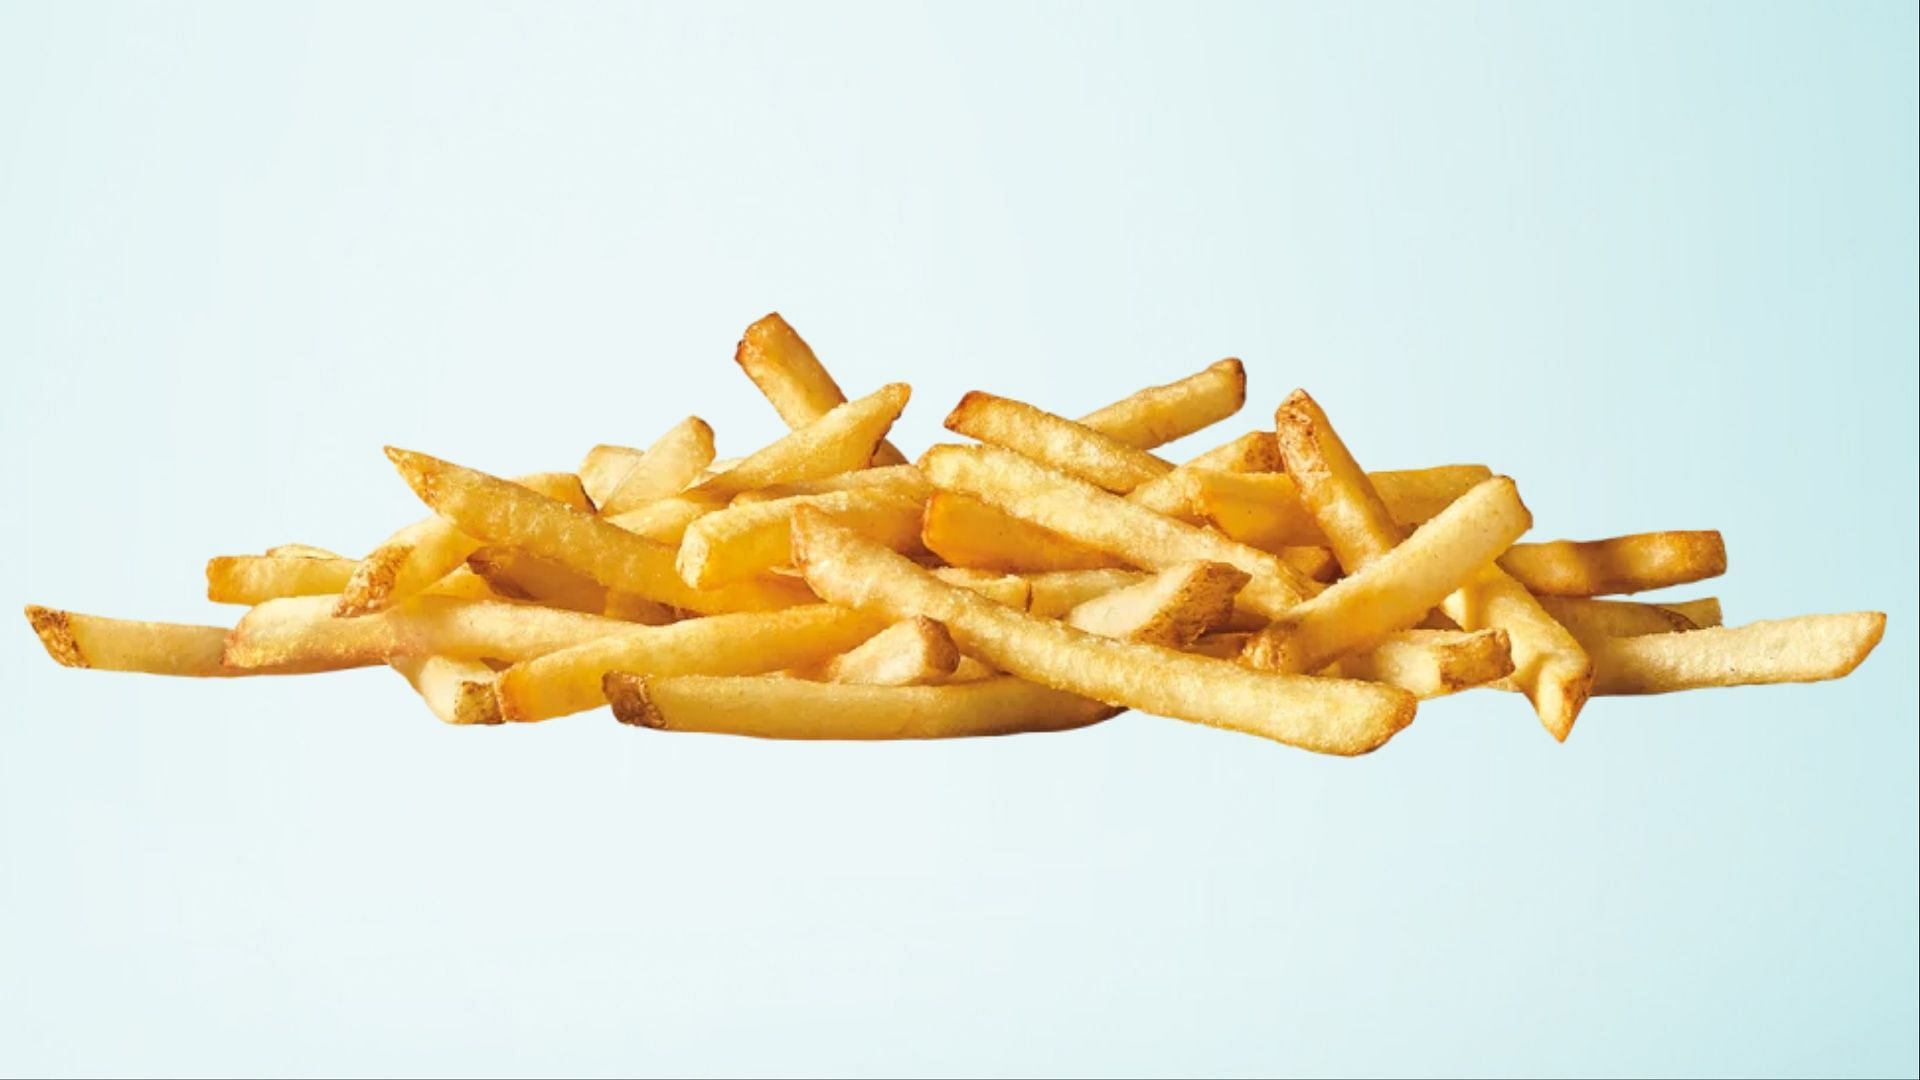 crispy, golden, seasoned fries (Image via Sonic)